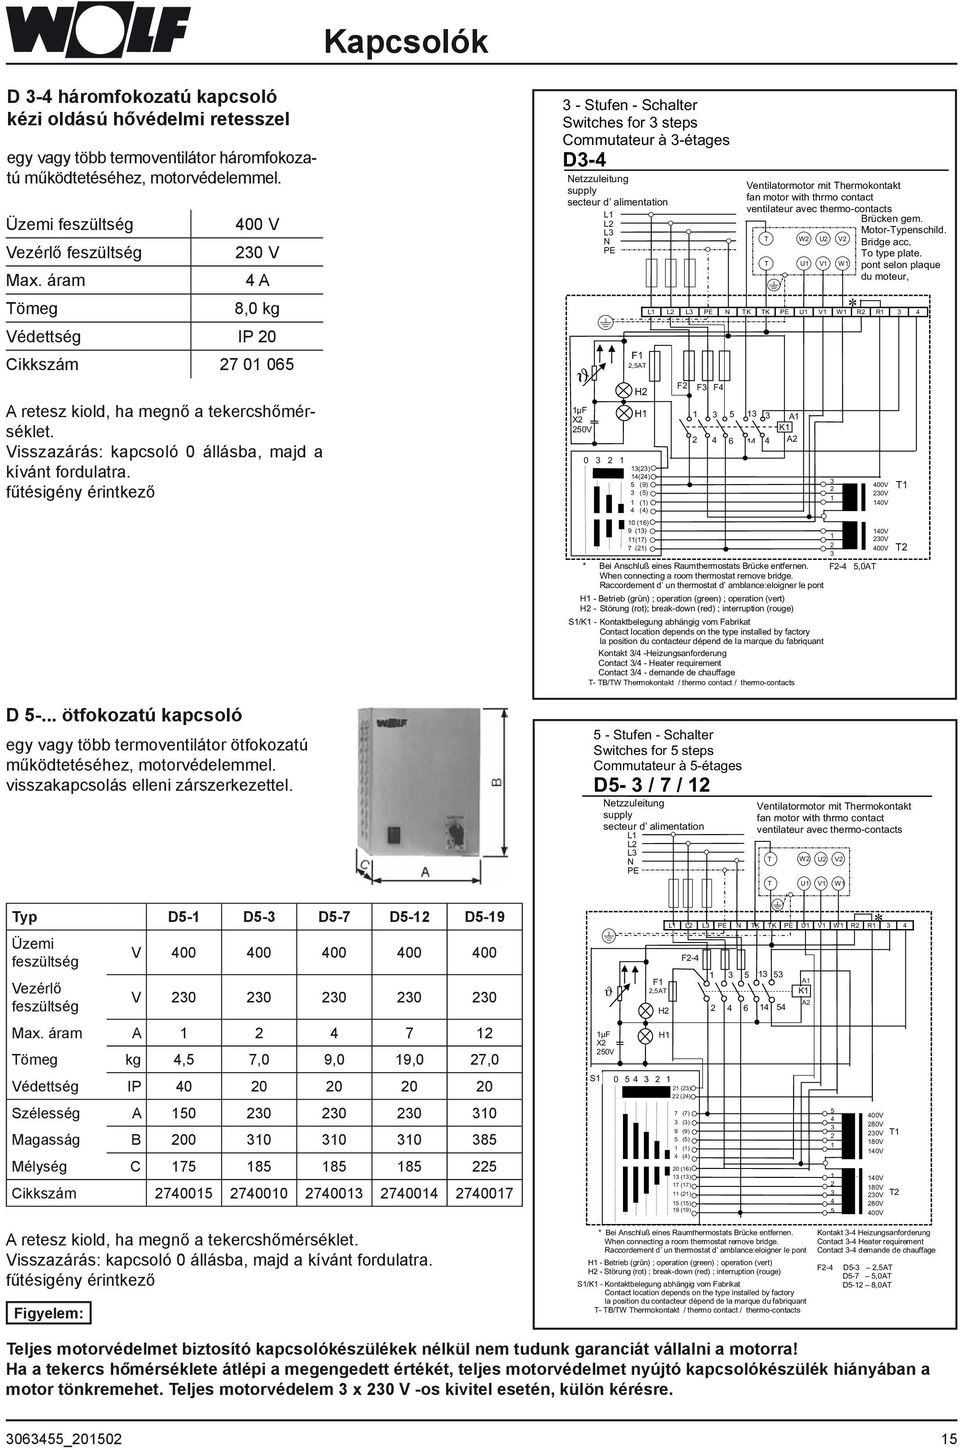 fűtésigény érintkező - Stufen - Schalter Switches for steps Commutateur à -étages D-4 Netzzuleitung supply secteur d alimentation L L L N PE ϑ µf X 50V 0 F,5AT H H () 4(4) 5 (9) (5) () 4 (4) L L L PE